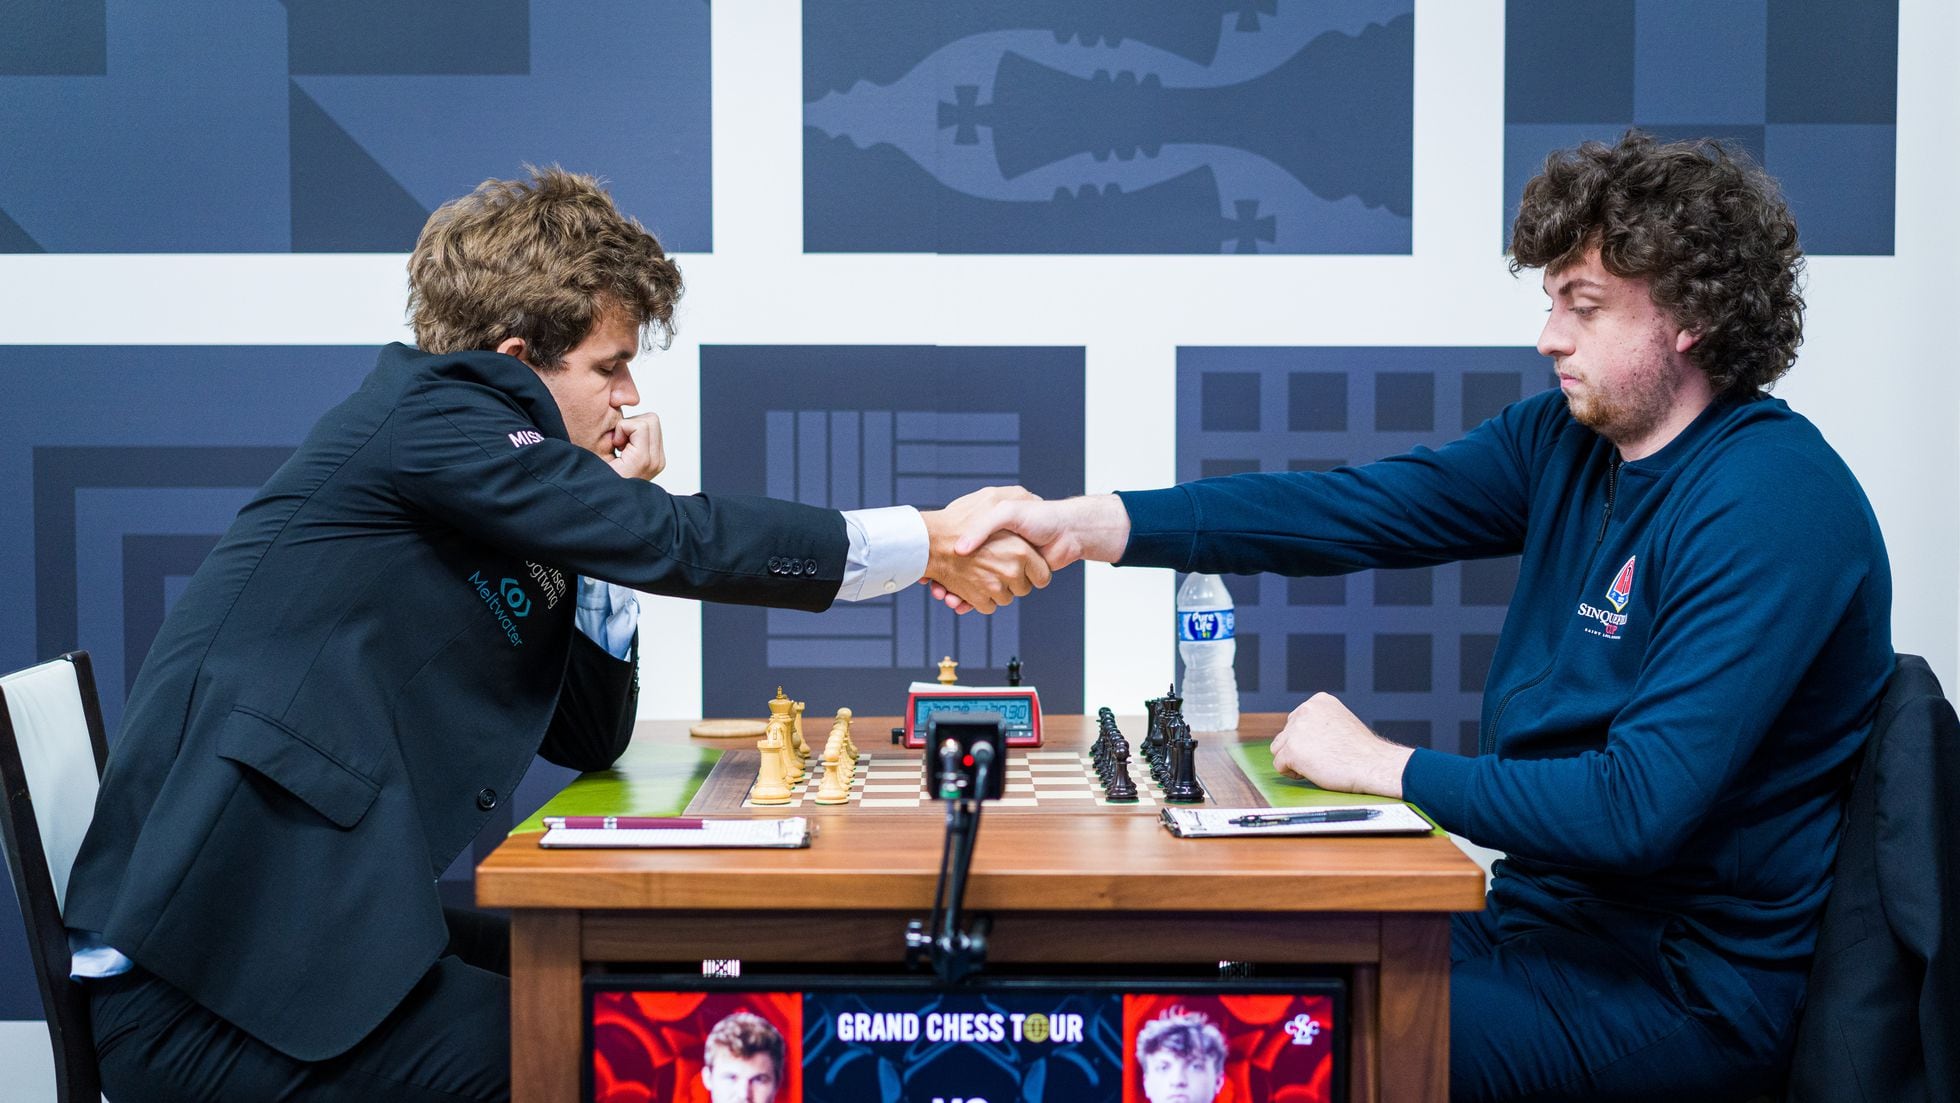 Ajedrez Goya - La rivalidad entre Magnus Carlsen y Anish Giri manifiesta en  Twitter. Anish: Los dos jugadores del top últimamente me dejan sin récords  (por la reciente racha sin ganar de